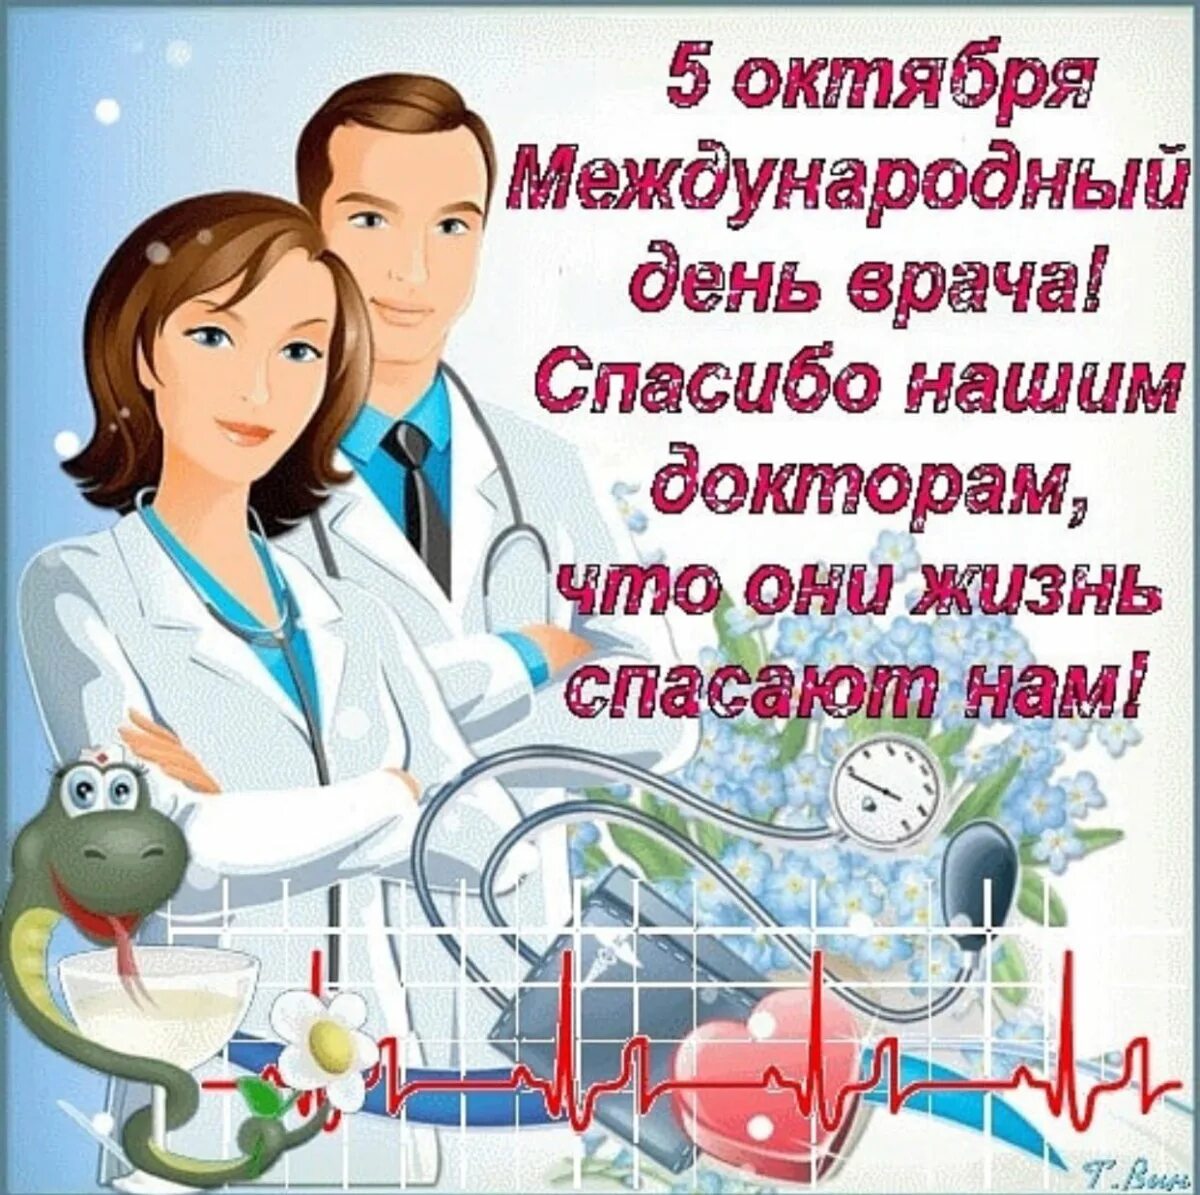 С днем врача поздравления. Поздравление с днем медика. Картинки для поздравления врачей. Плакат ко Дню медицинского работника. Пожелание день врача